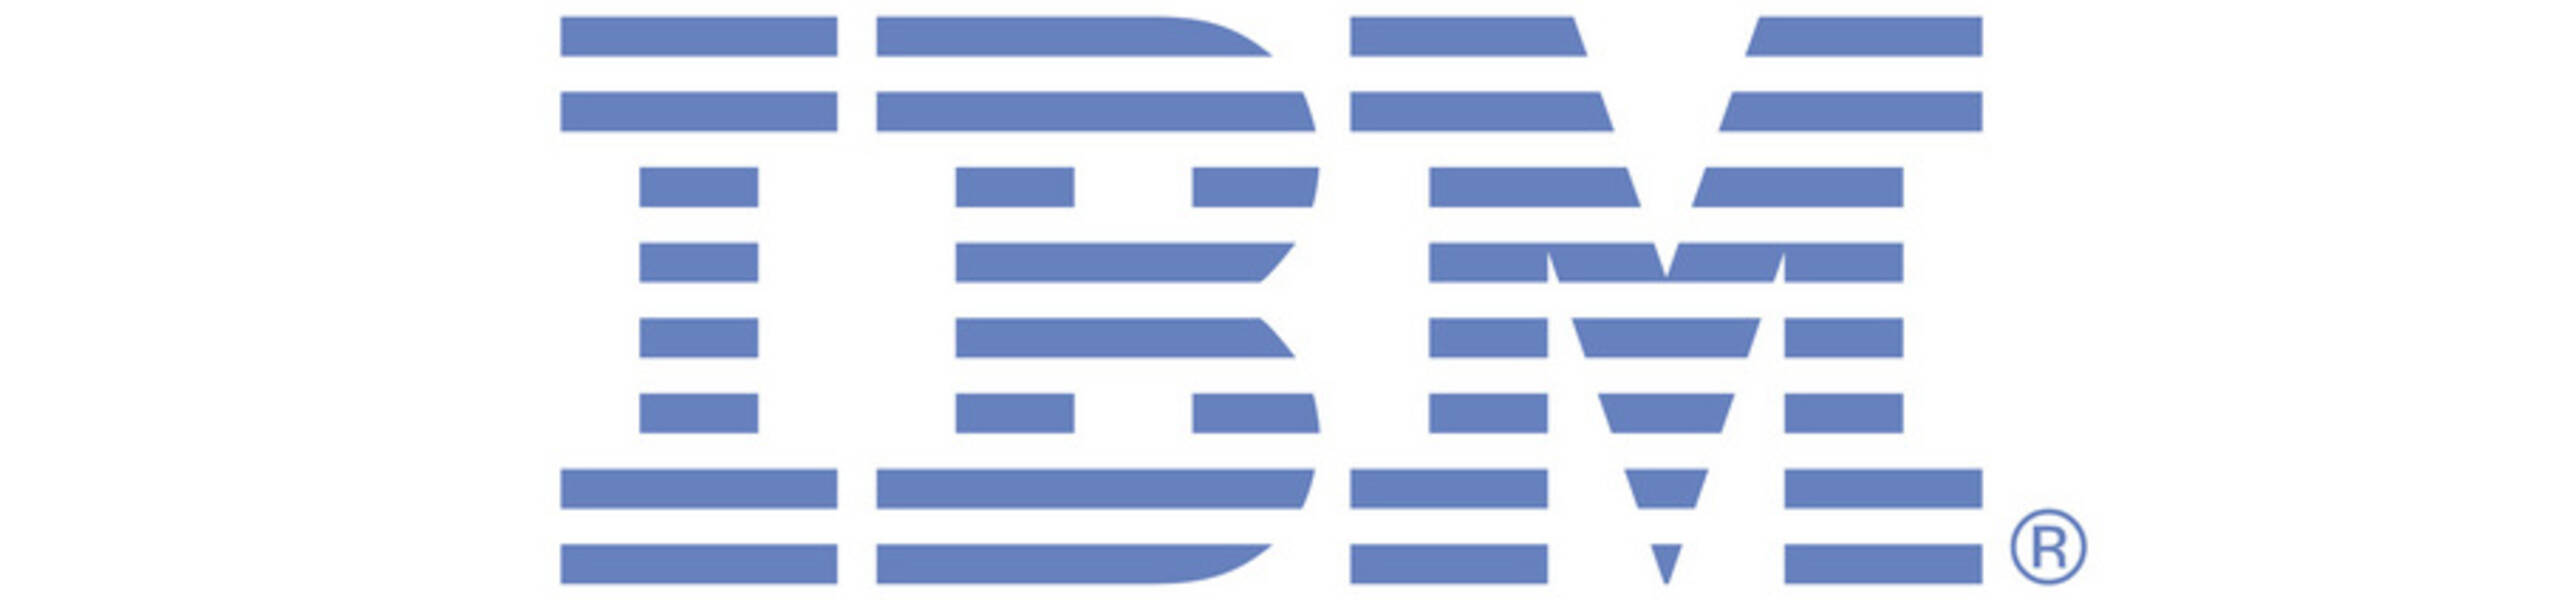 IBM: ahead of earnings report